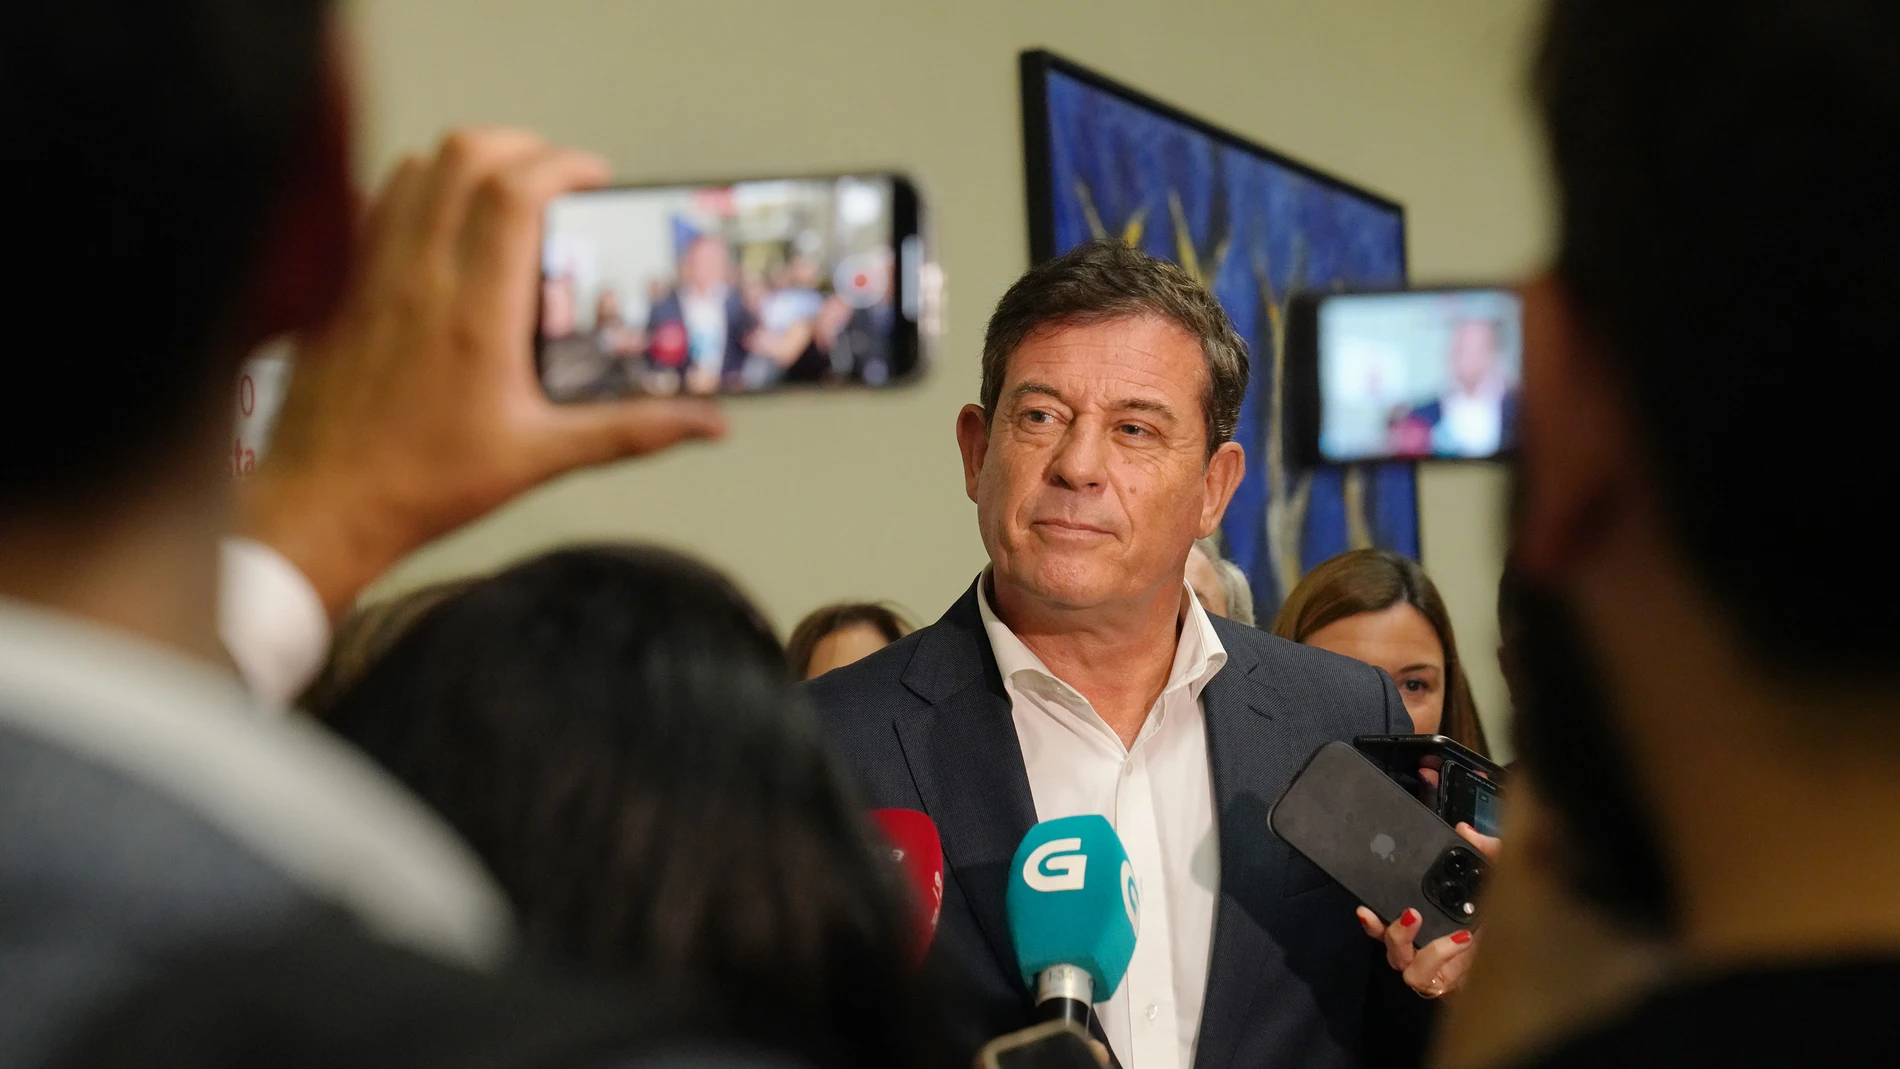 Besteiro anuncia "con gran orgullo" que concurrirá a las primarias para ser el candidato socialista a la Xunta